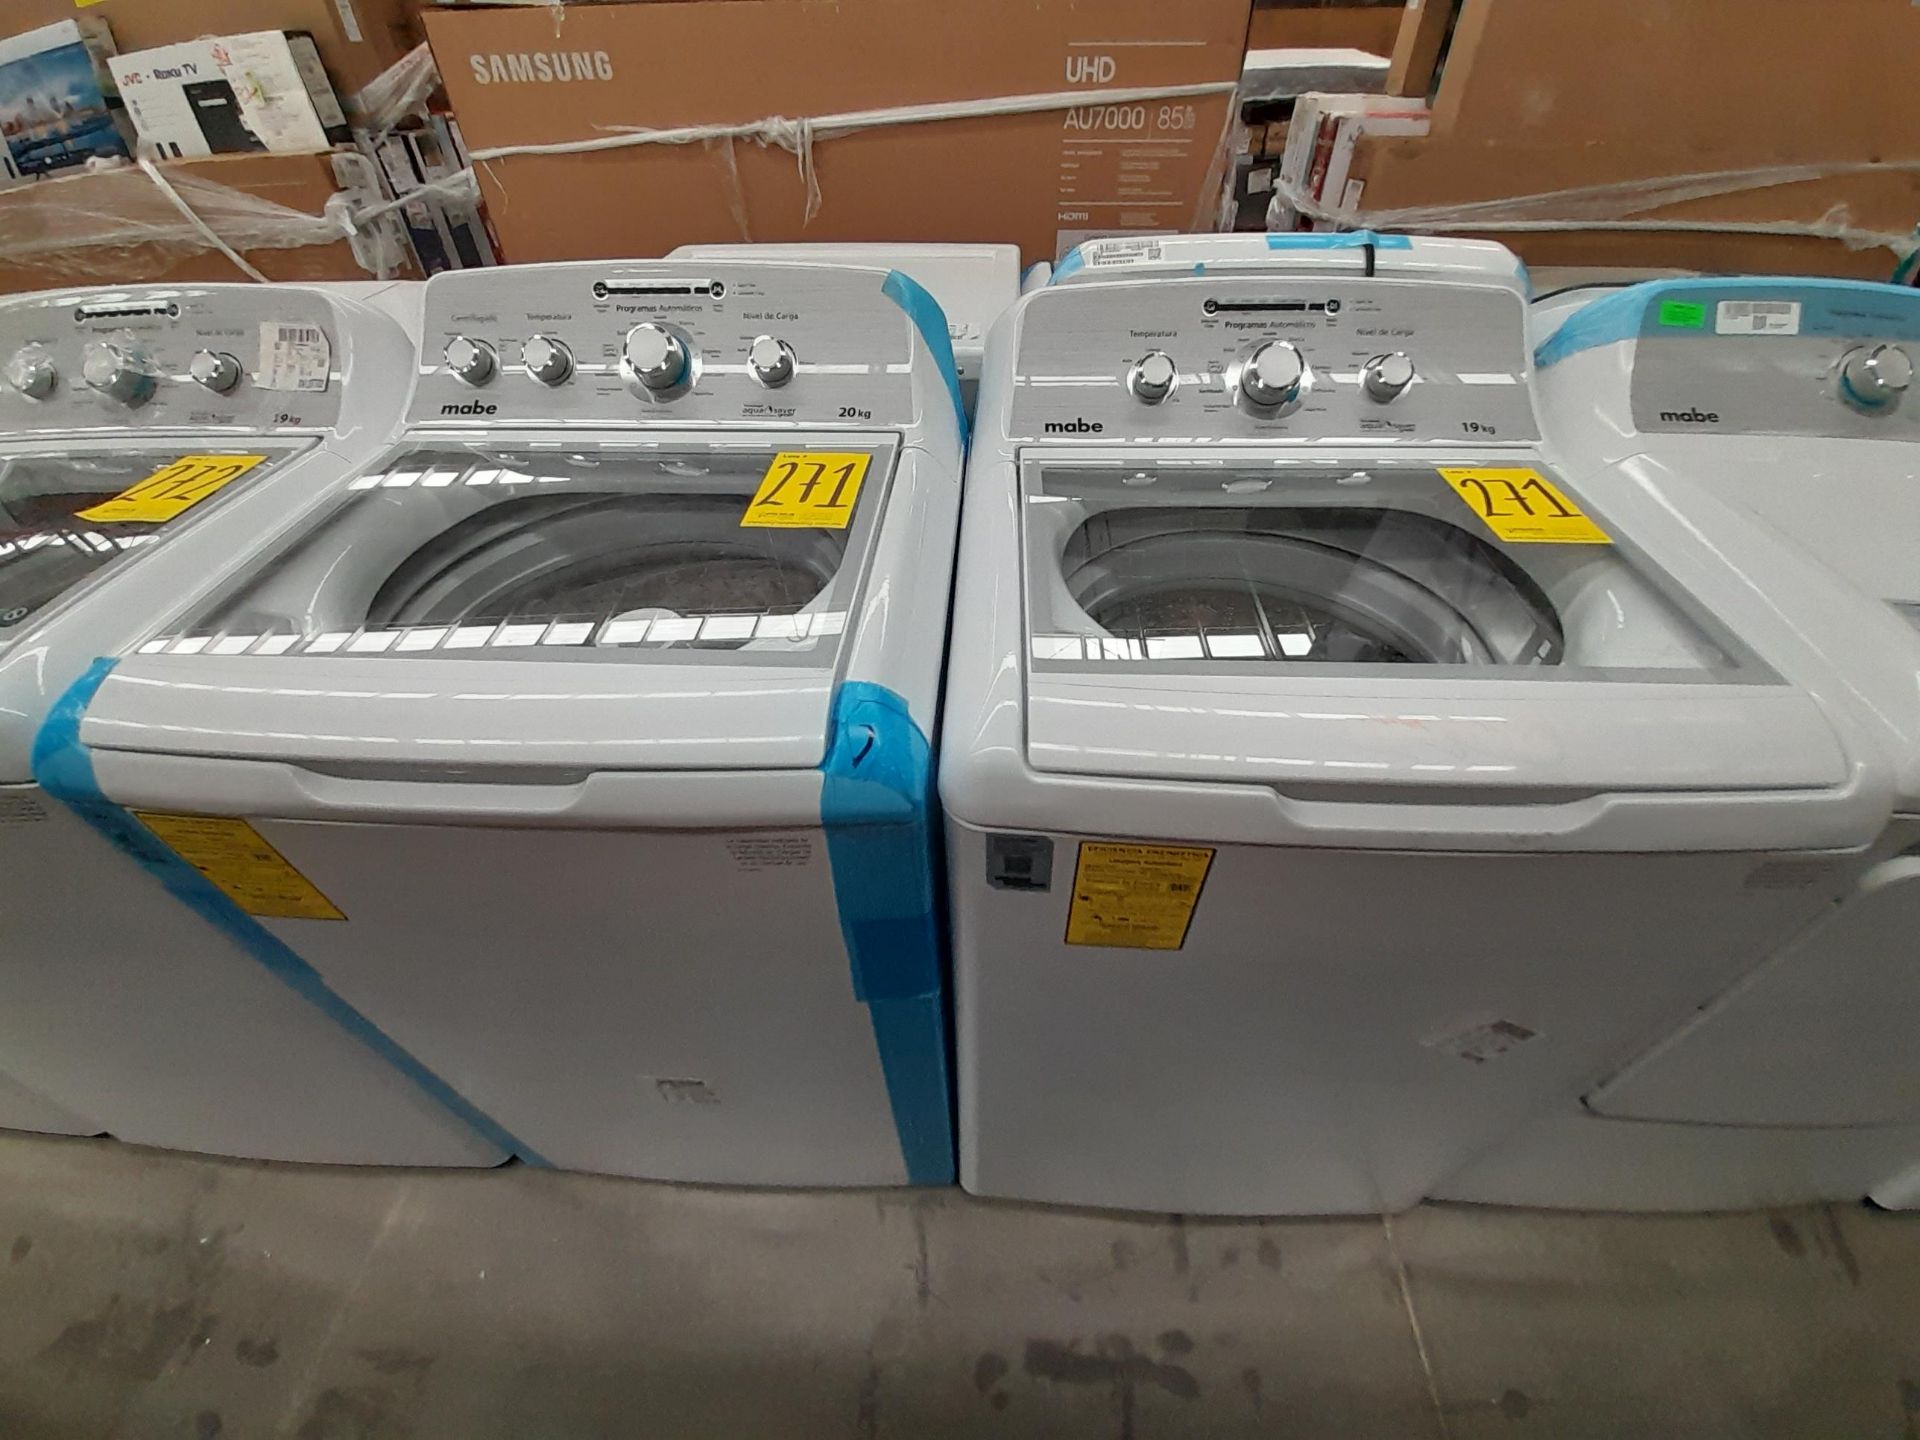 Lote de 2 lavadoras Contiene: 1 lavadora de 20 KG, marca MABE, modelo LMA70214VBAB03, serie S12869,